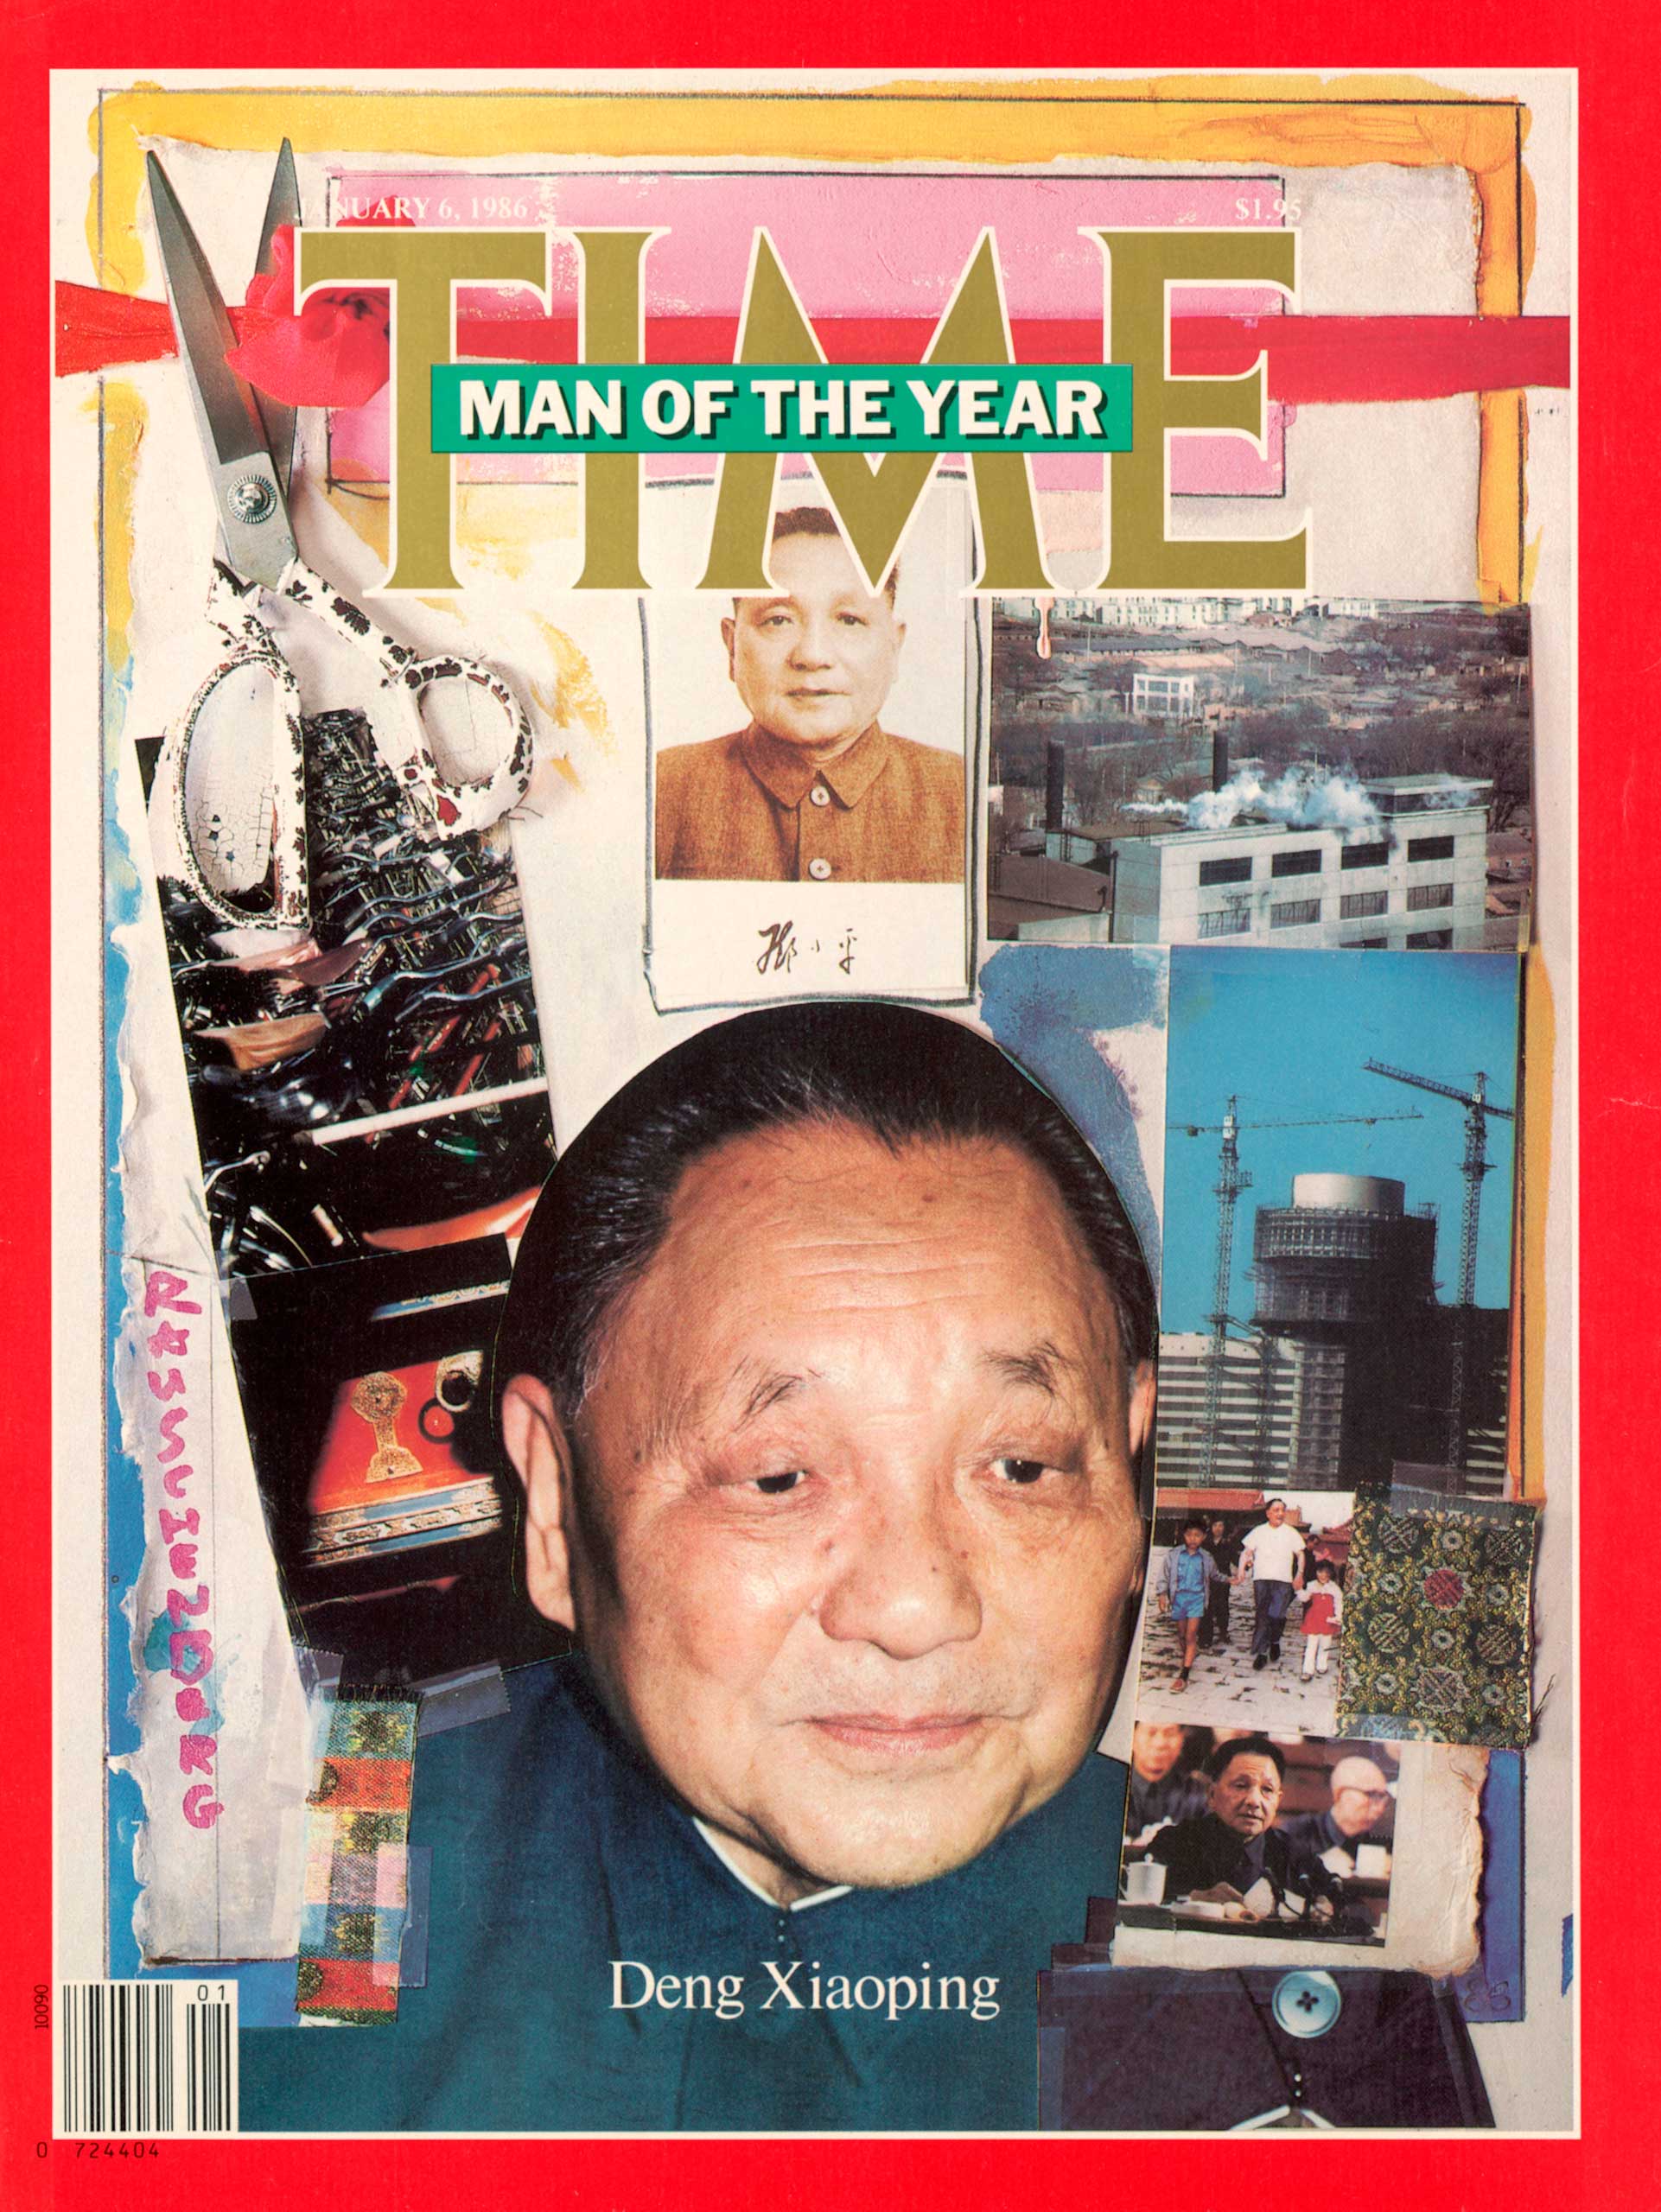 1985: Deng Xiaoping